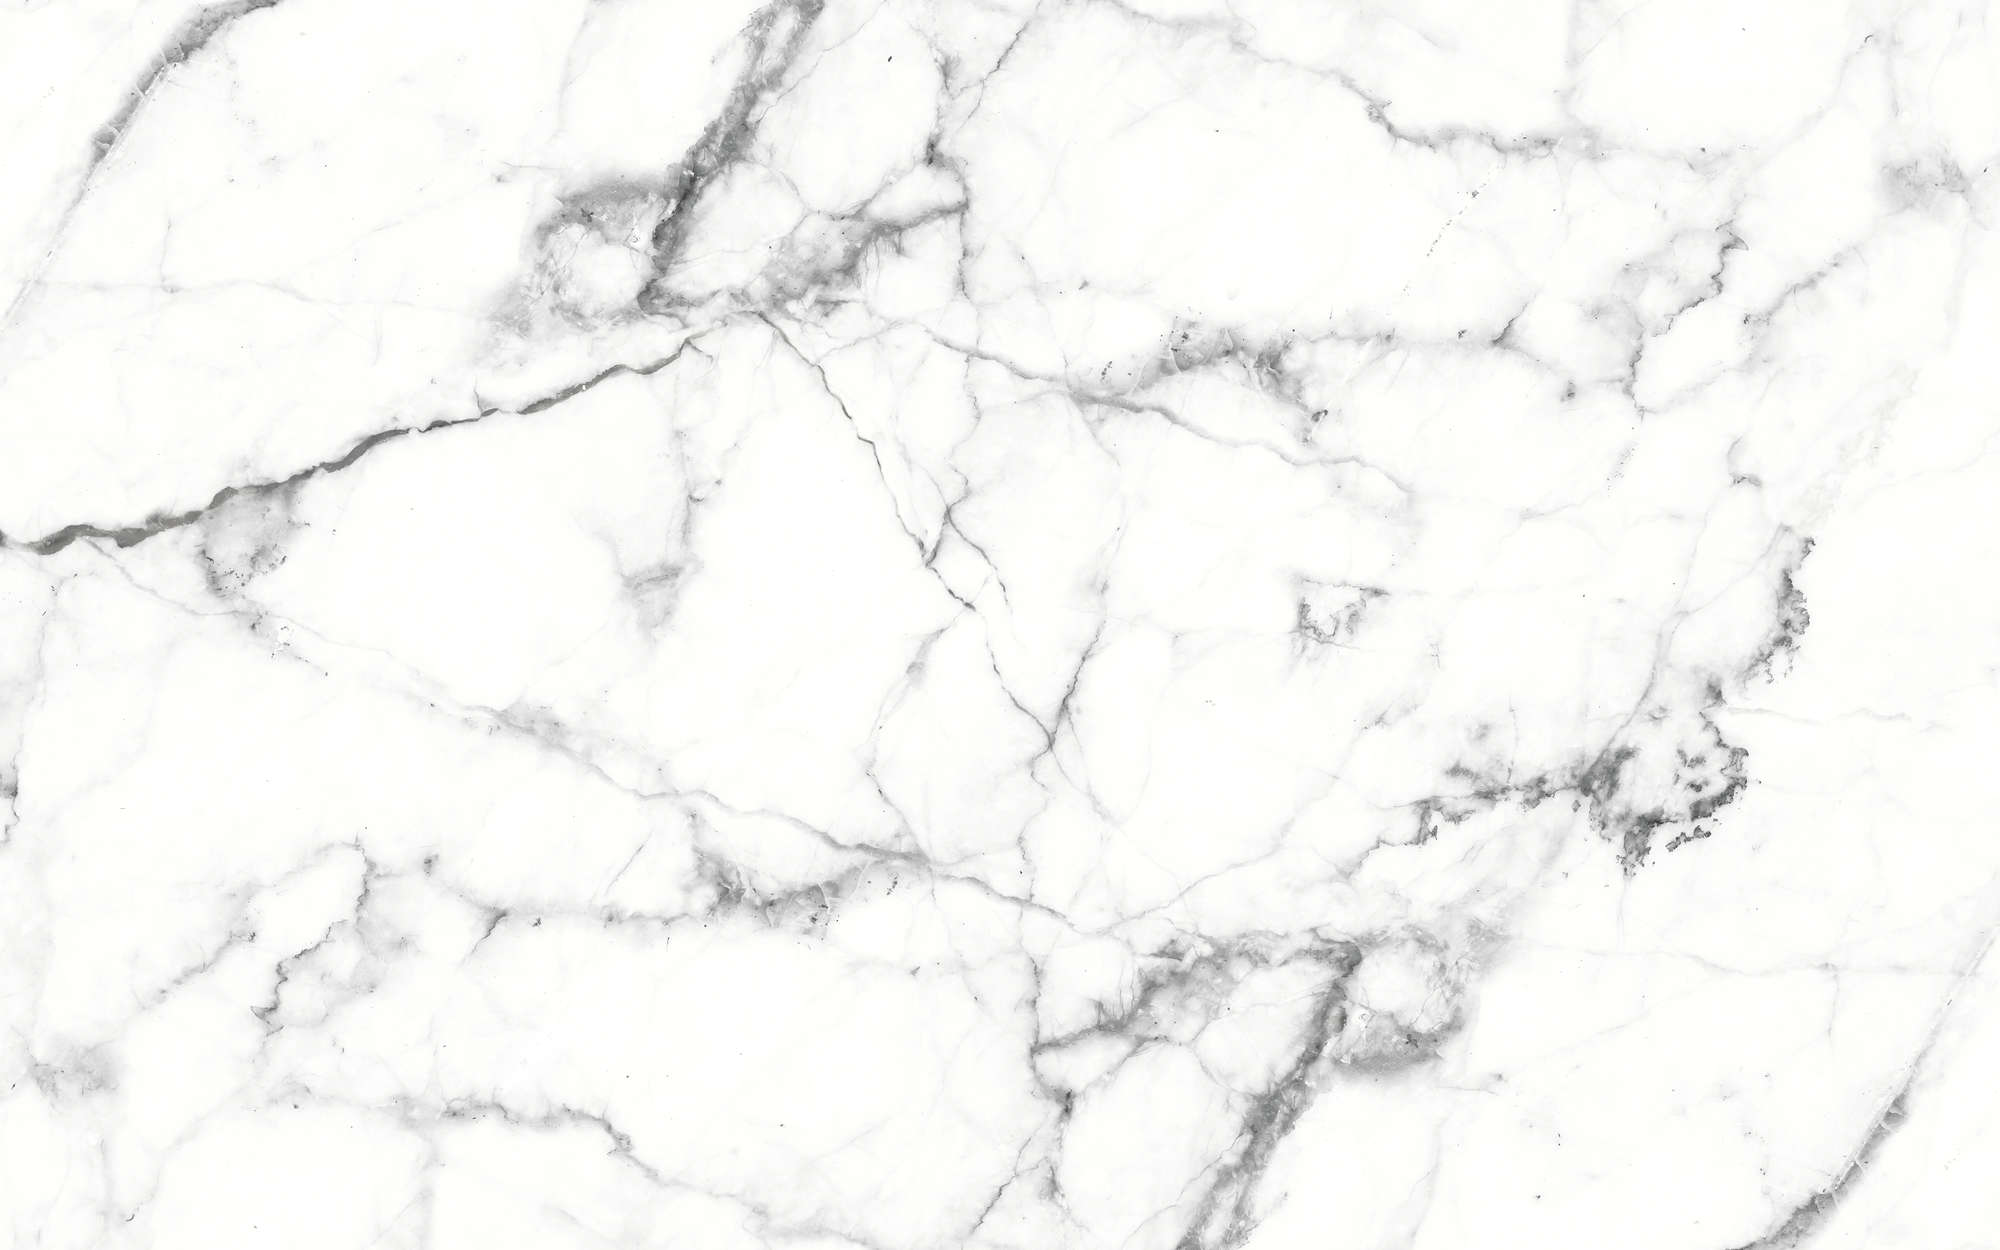             Papier peint panoramique marbre aspect pierre claire marbrée - blanc, noir
        